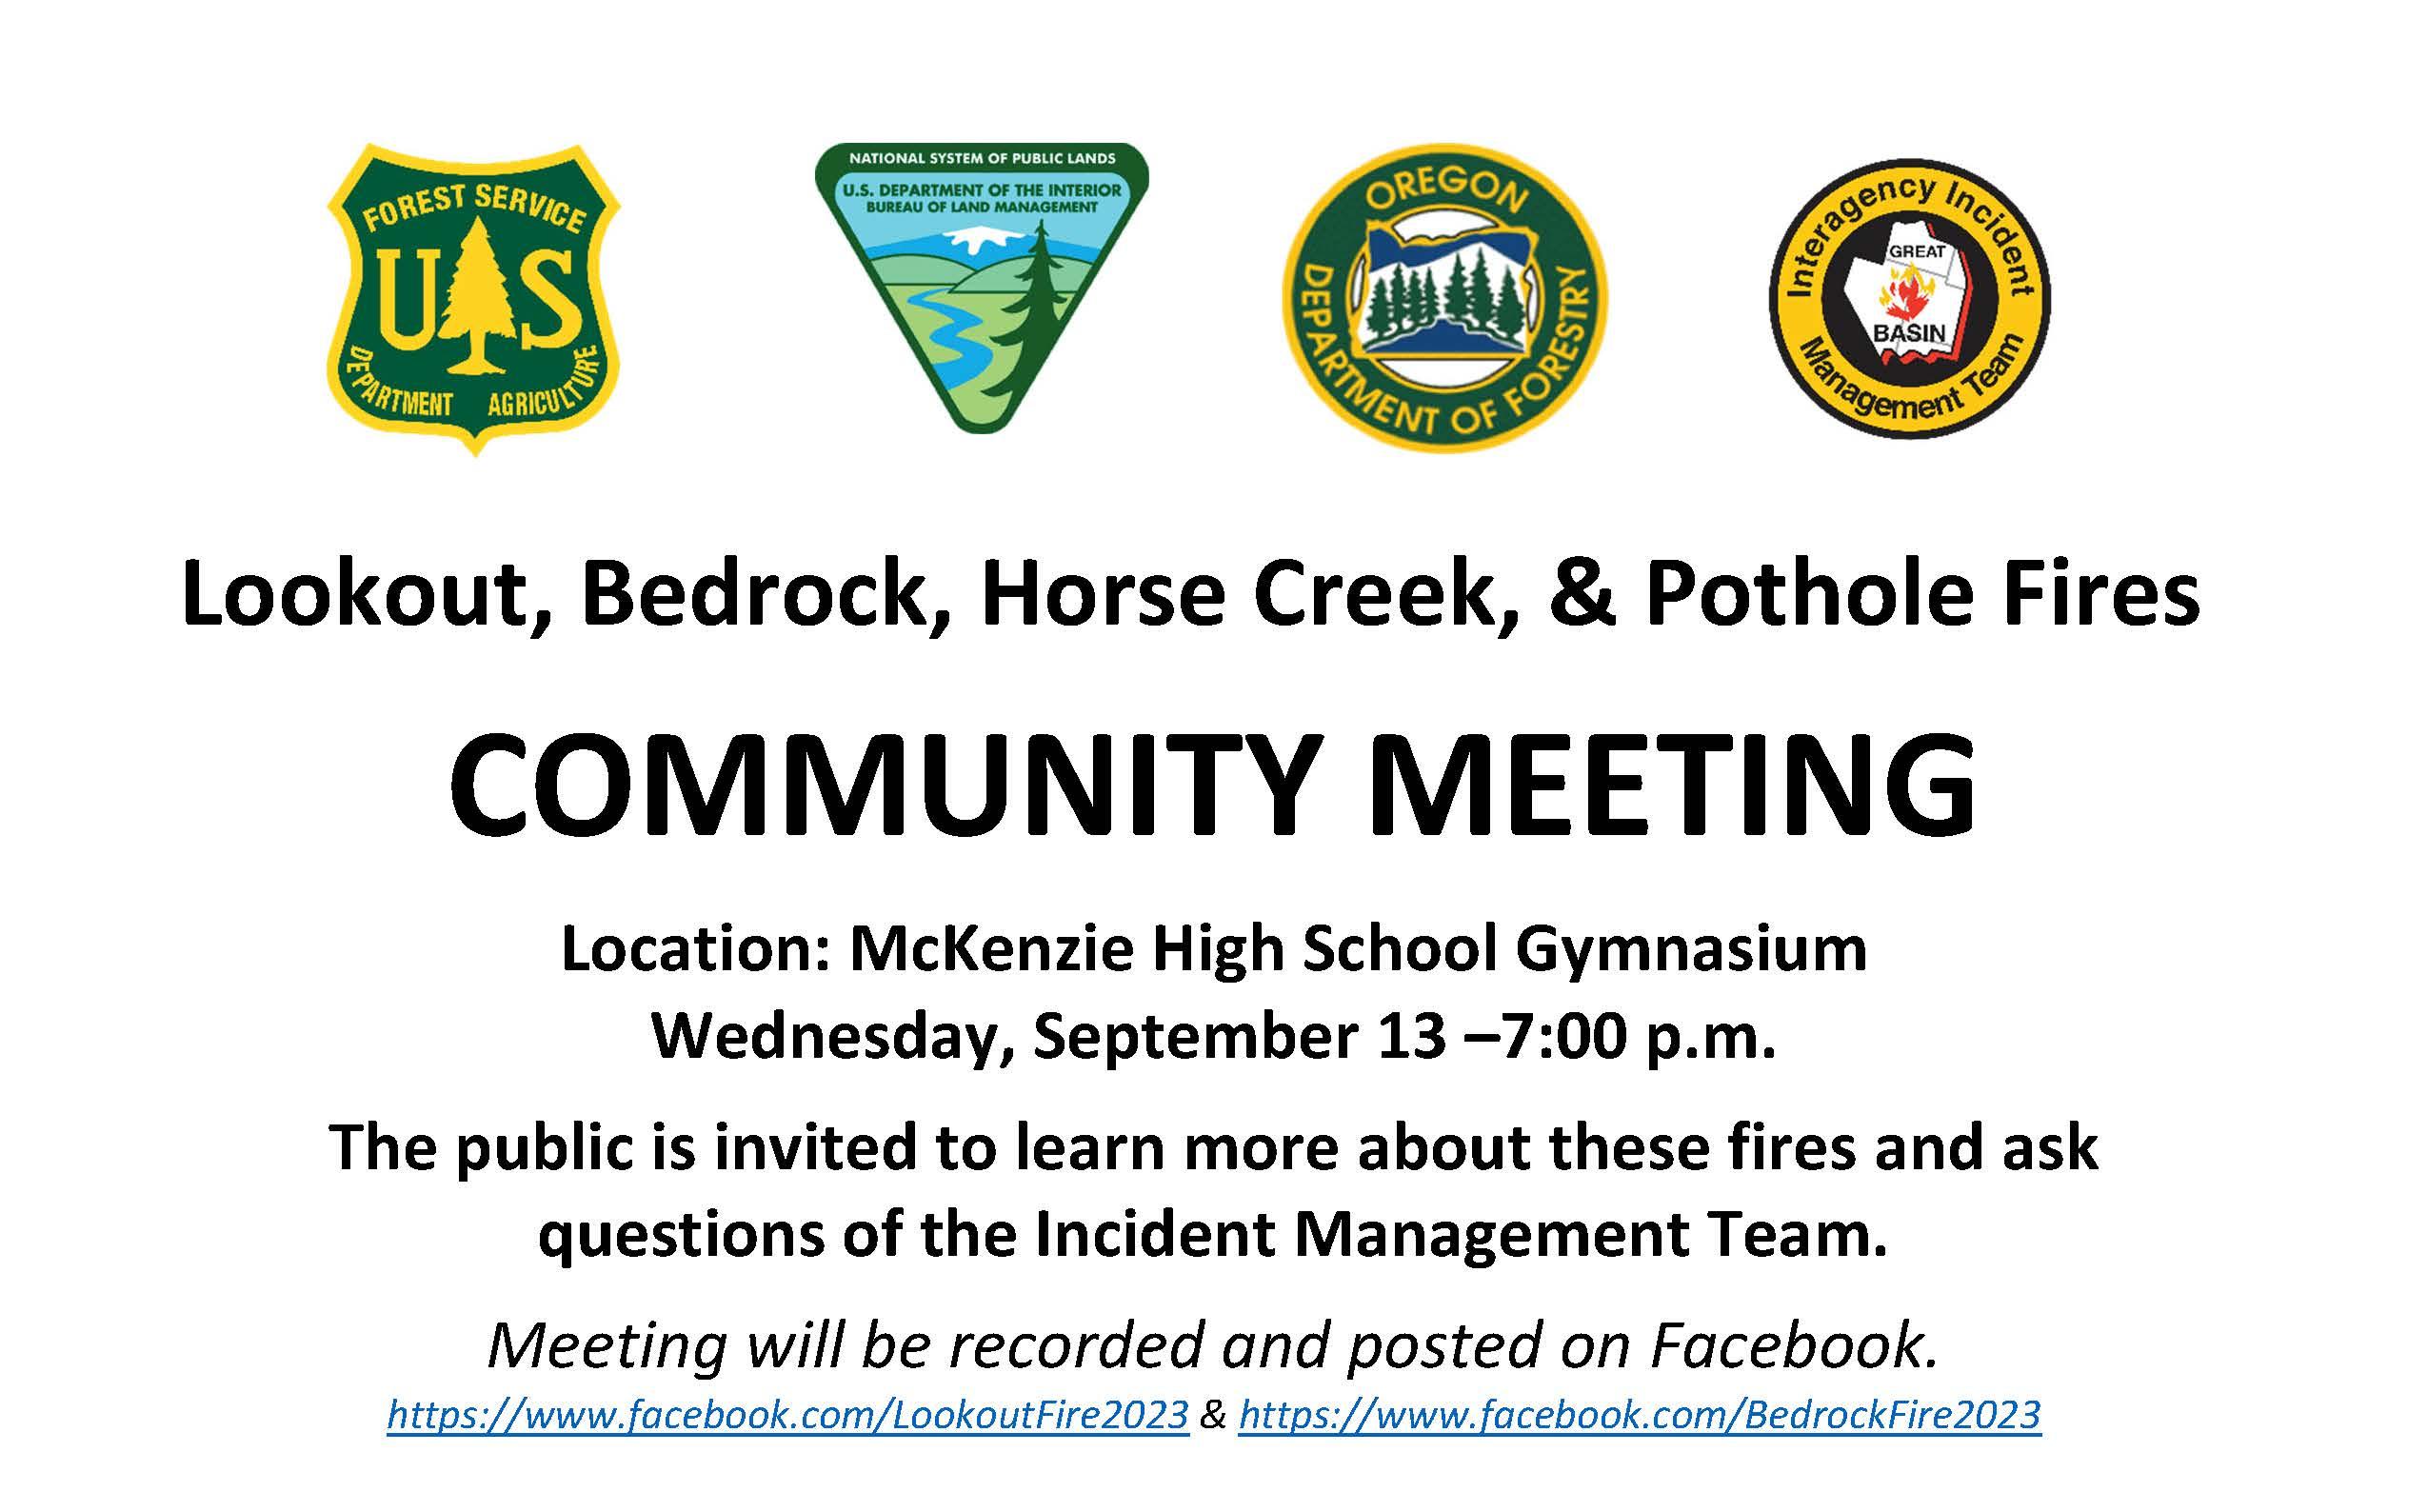 Community Meeting Set for September 13